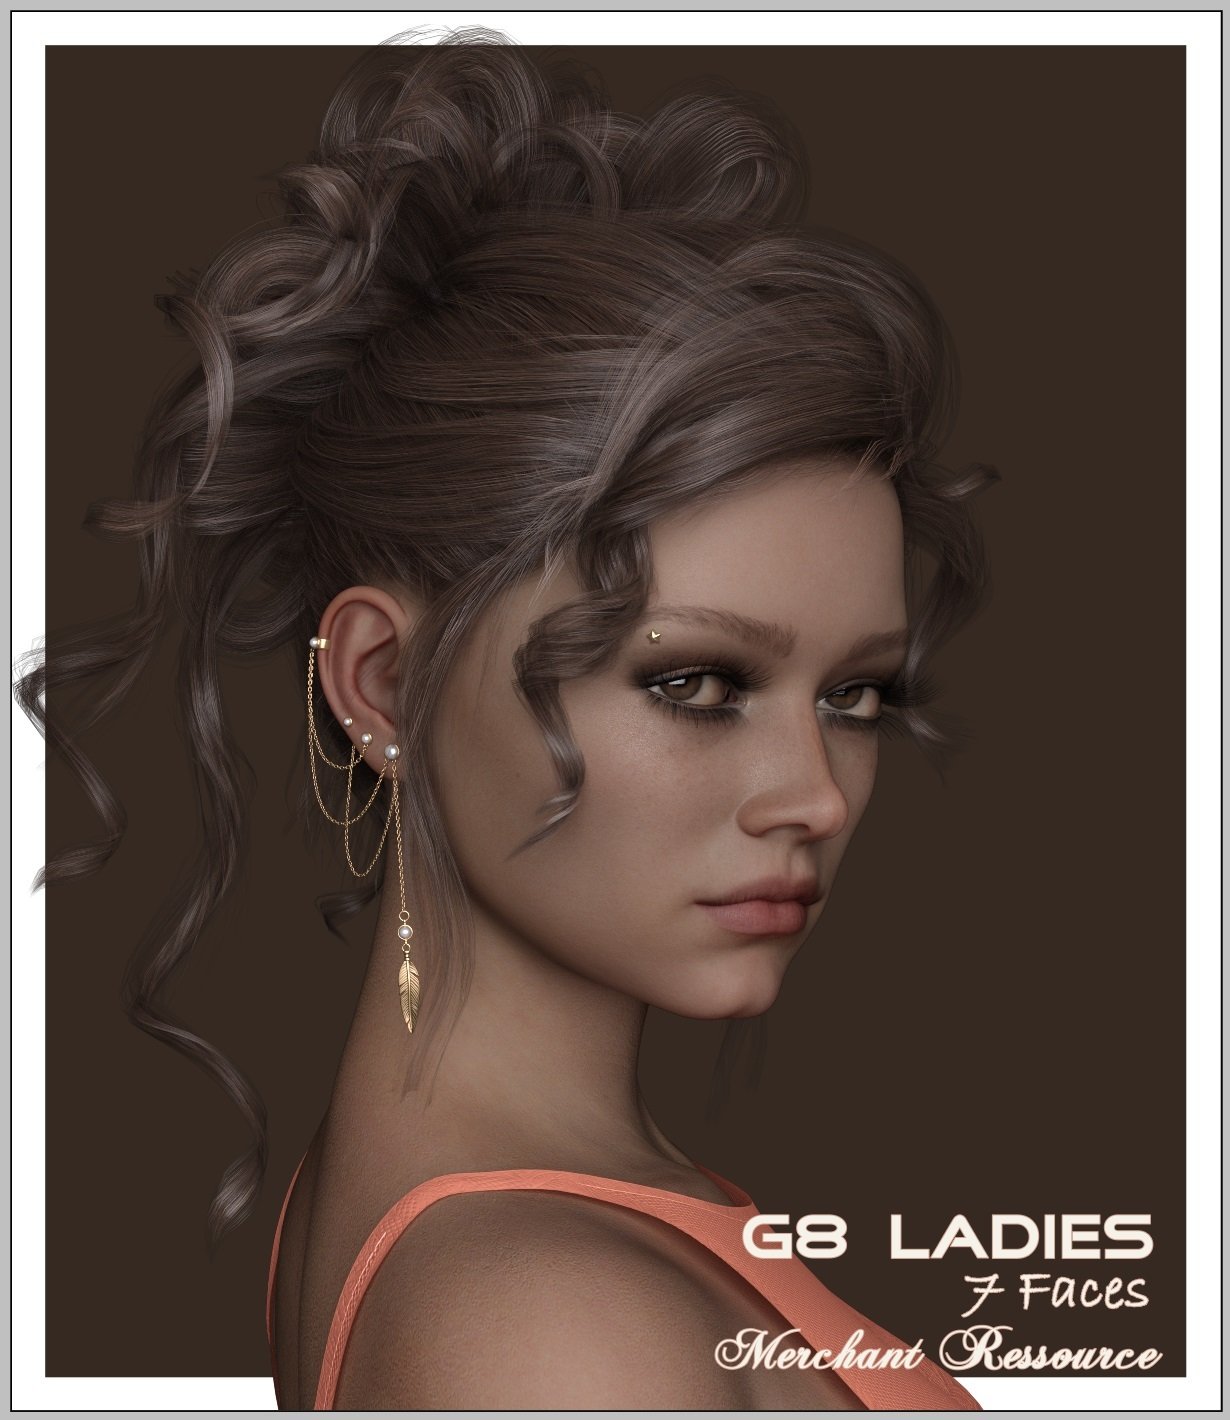 G8 Lady Faces - MR by: LUNA3D, 3D Models by Daz 3D